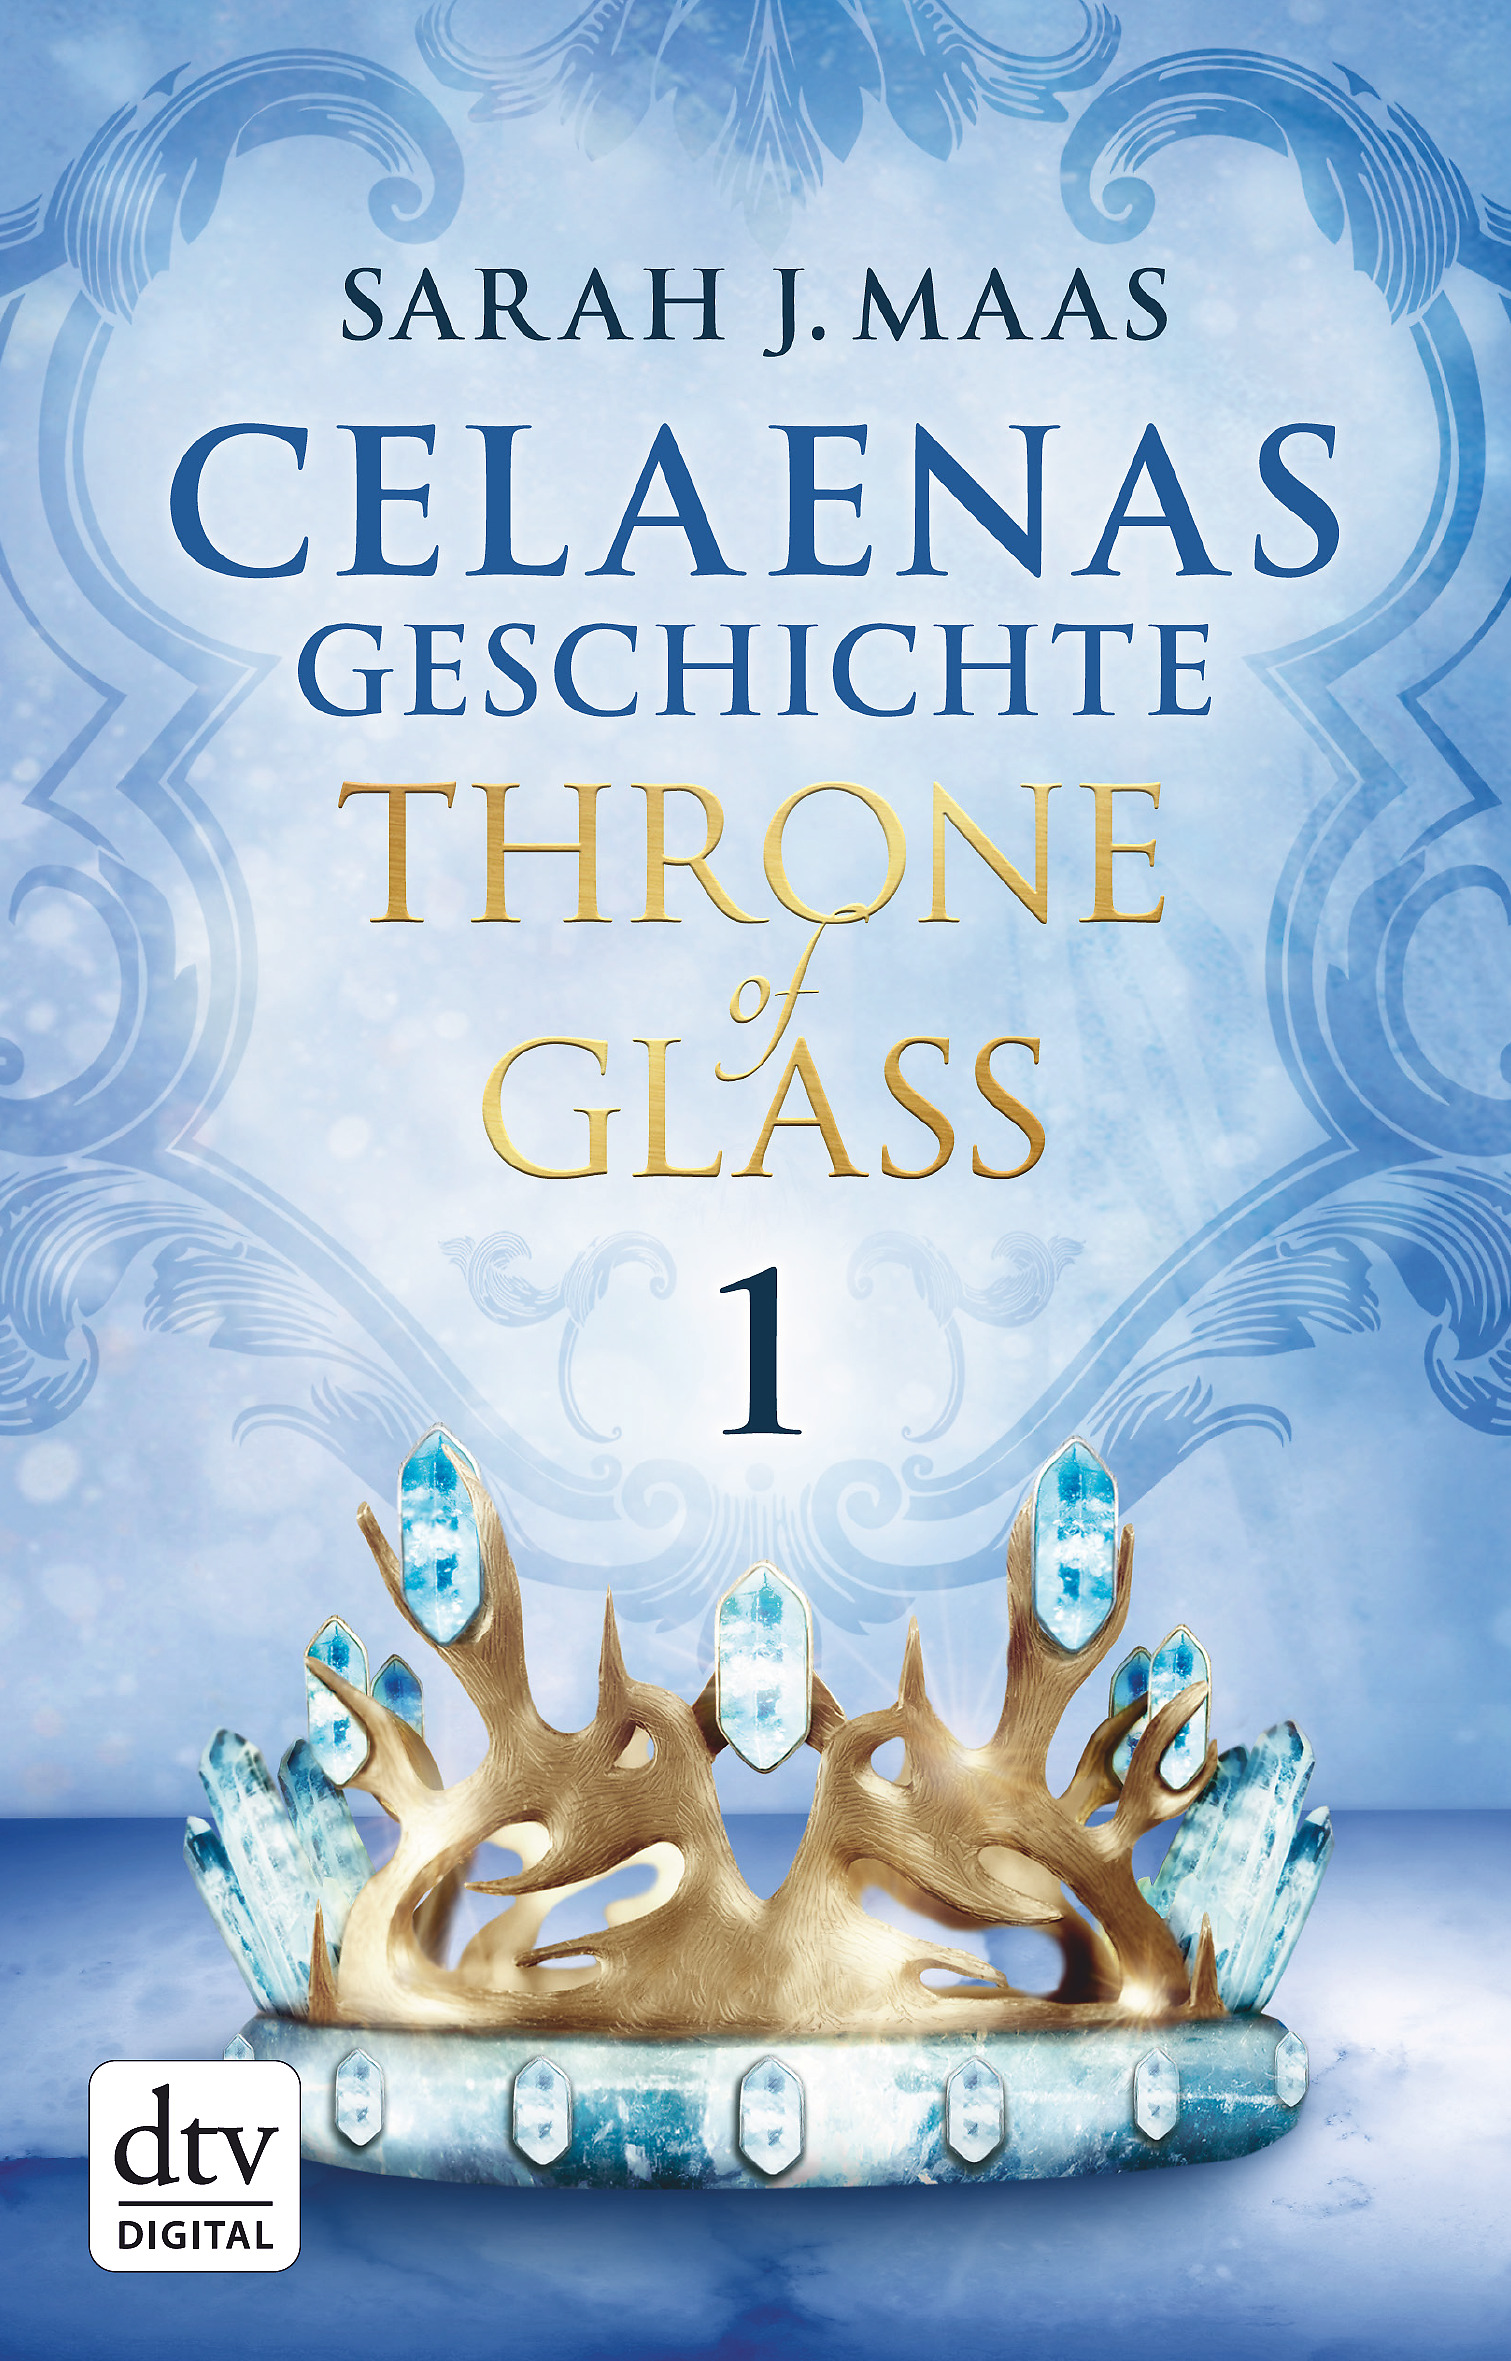 Sarah J. Maas: Throne of Glass – Celeanas Geschichte Novella 1-5